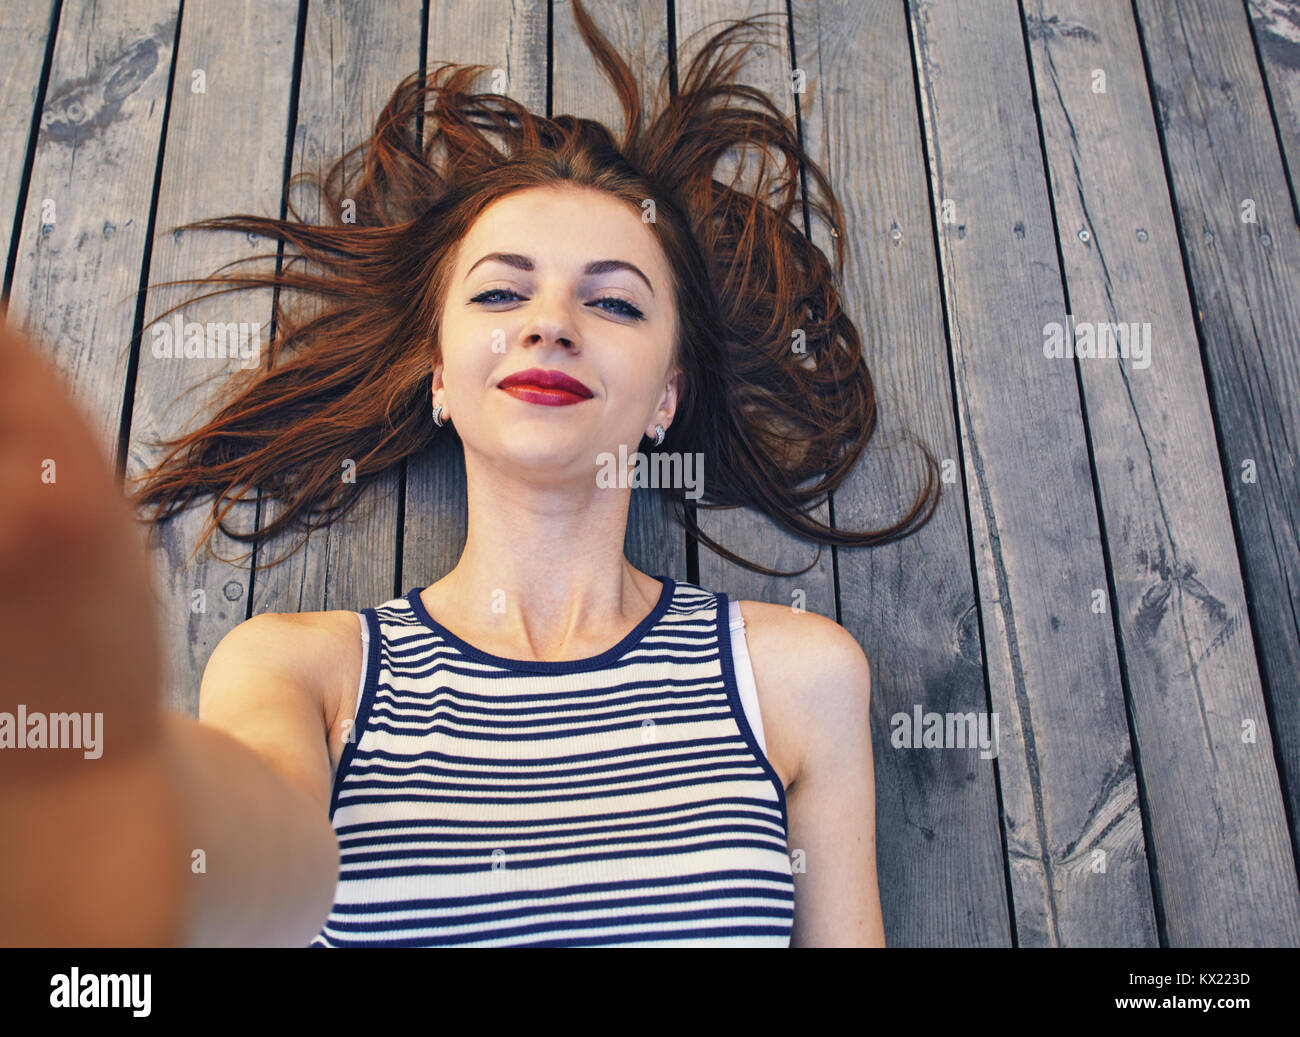 Nahaufnahme, Porträt einer jungen schönen Frau mit einem Smartphone digitale Kamera mit ihren Händen und nehmen eine selfie self portrait von sich selbst während Vernetzung. Stockfoto